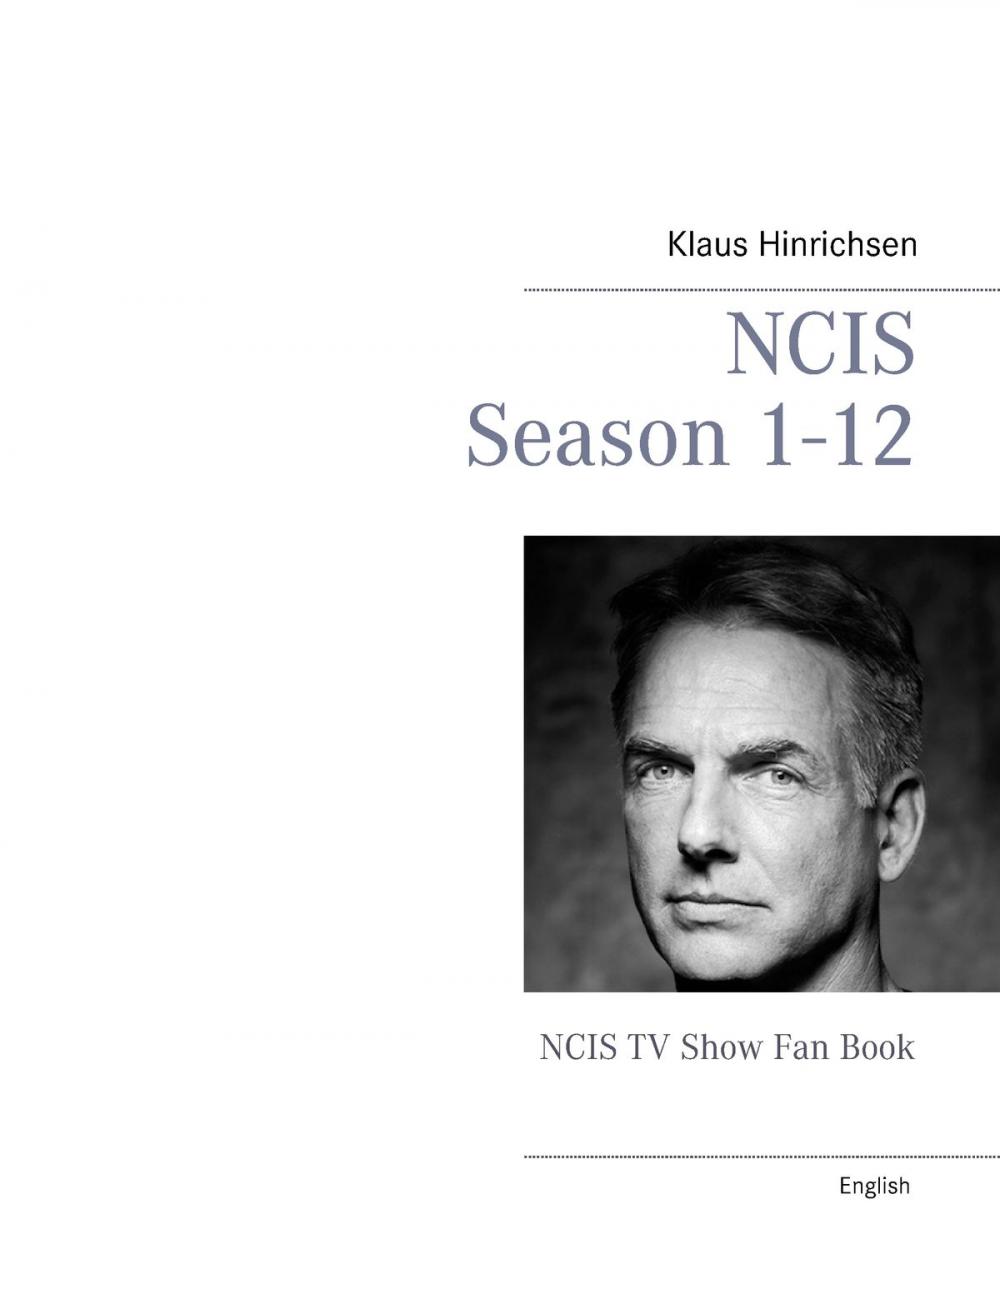 Big bigCover of NCIS Season 1 - 12